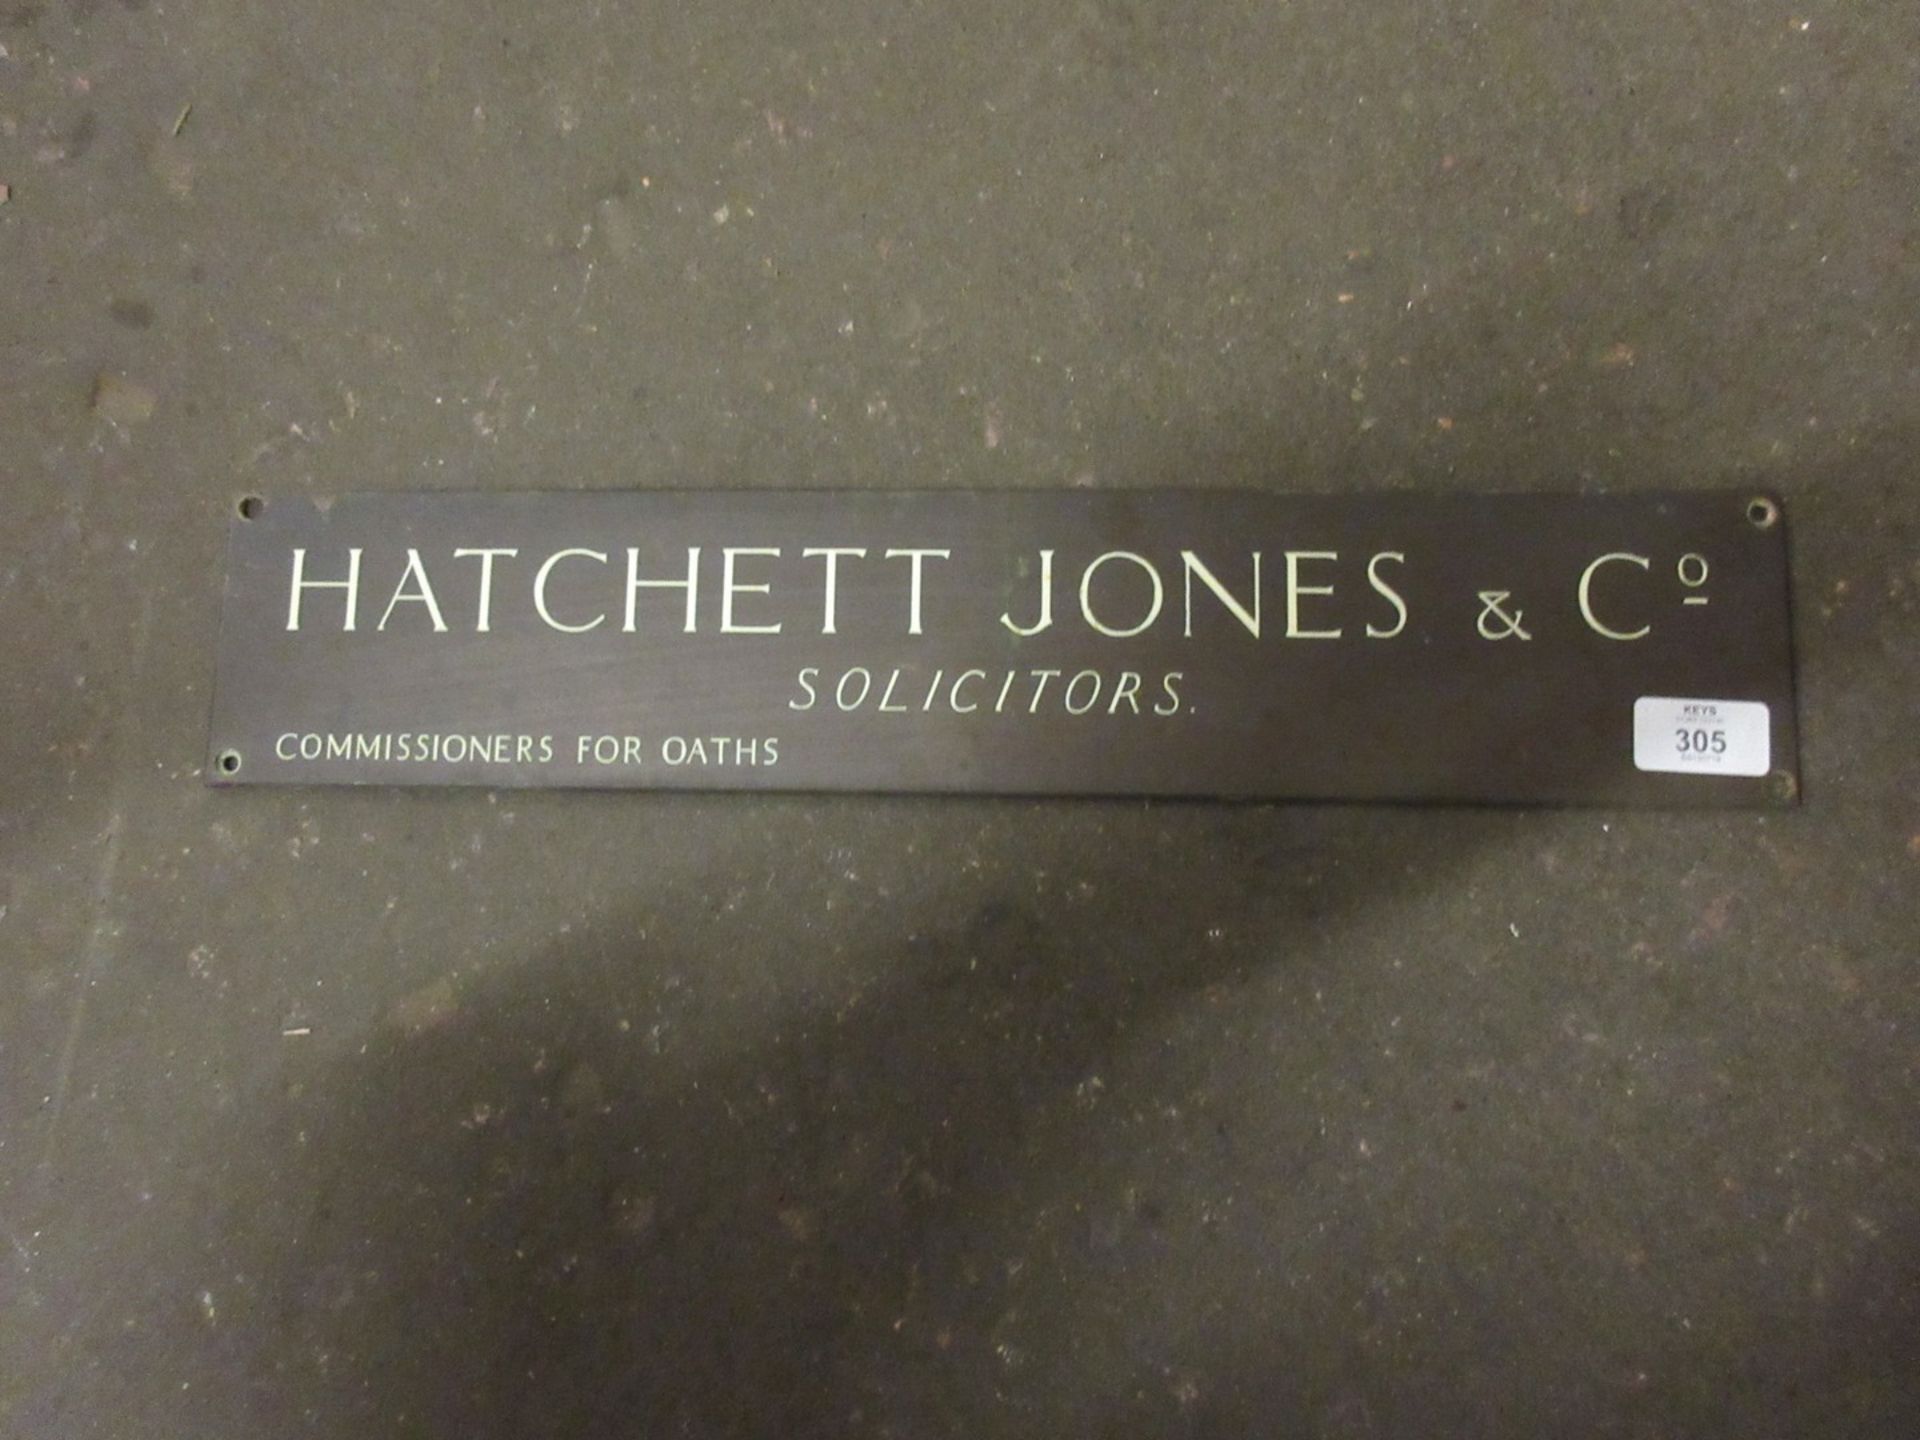 Local interest metal door plate, for Hatchett Jones and co, solicitors